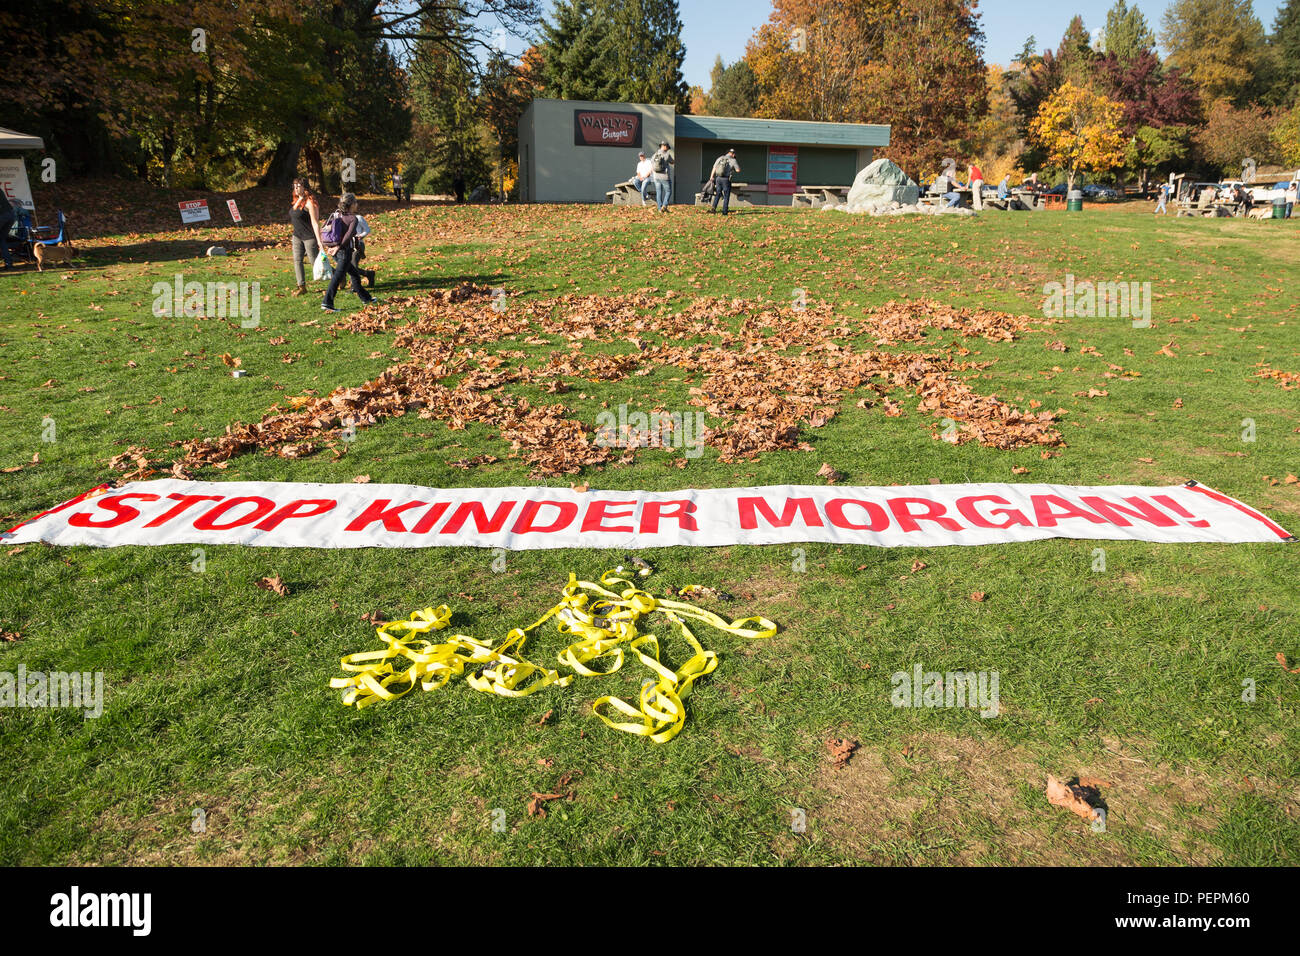 NORTH VANCOUVER, BC, Kanada - 28 Oktober 2017: Protest Schilder an Cates Park mit einer Anzeige gegen die Kinder Morgan Pipeline Expansion. Stockfoto